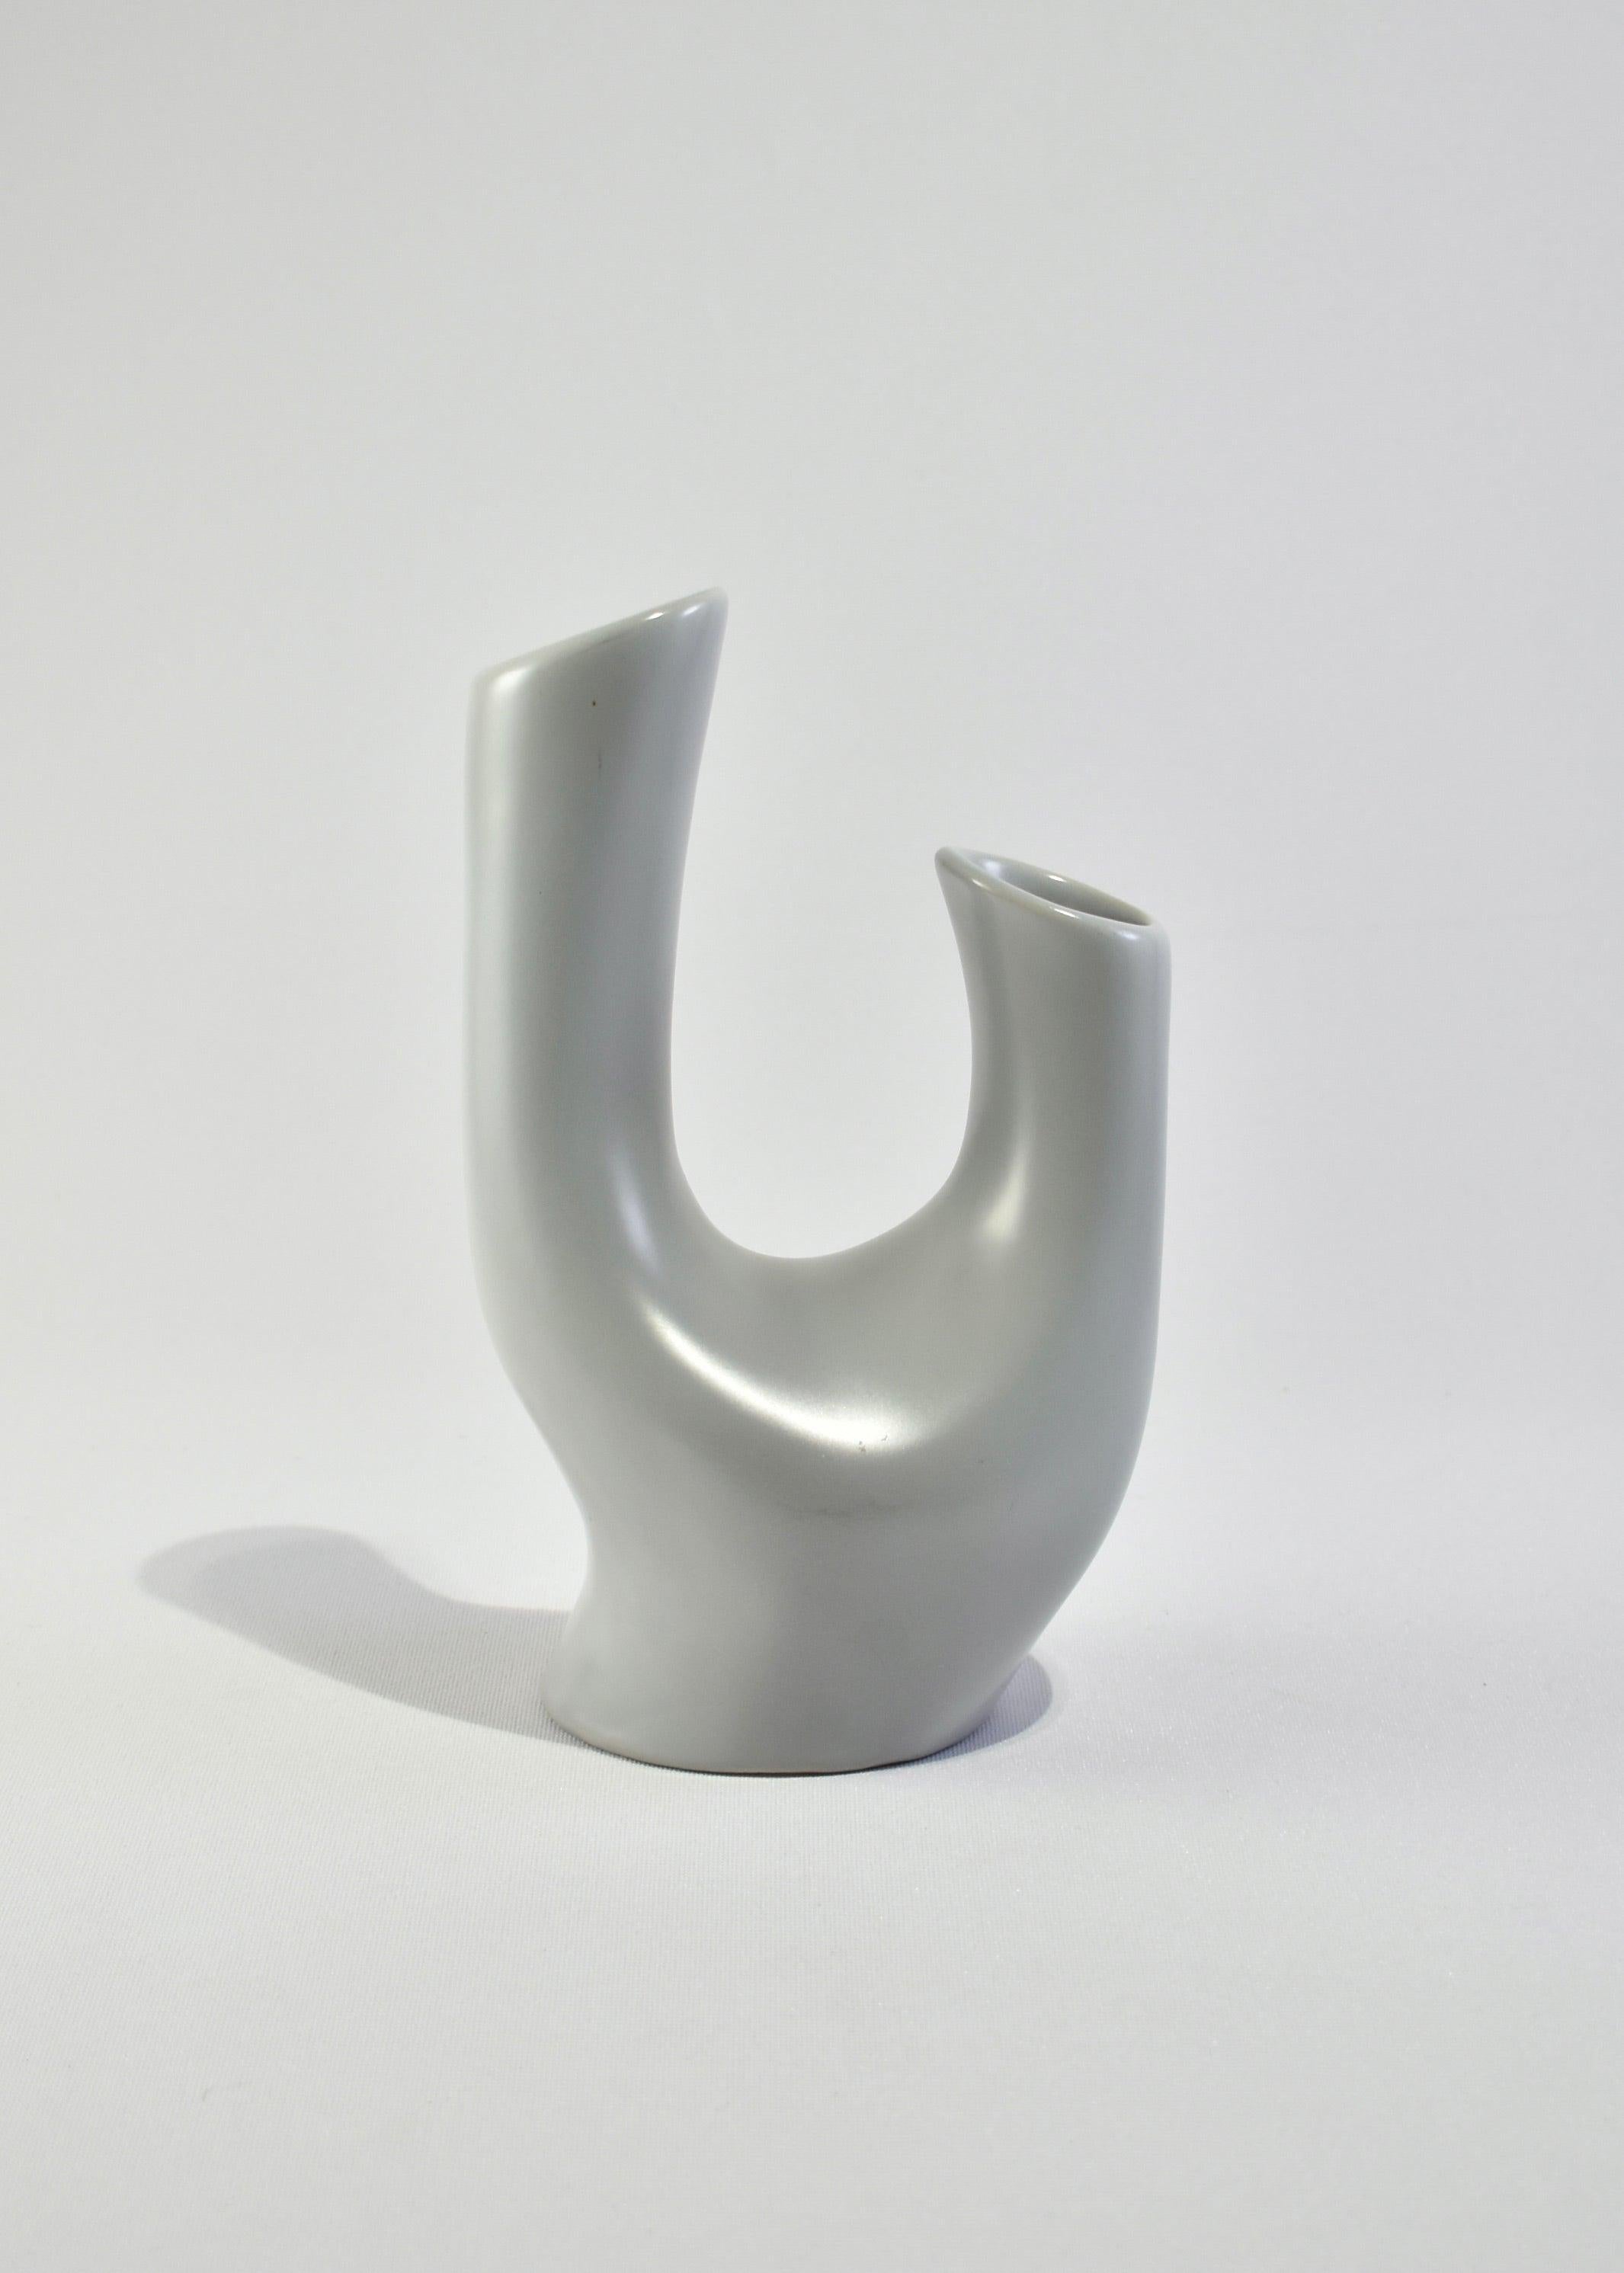 20th Century Modernist Ceramic Vase